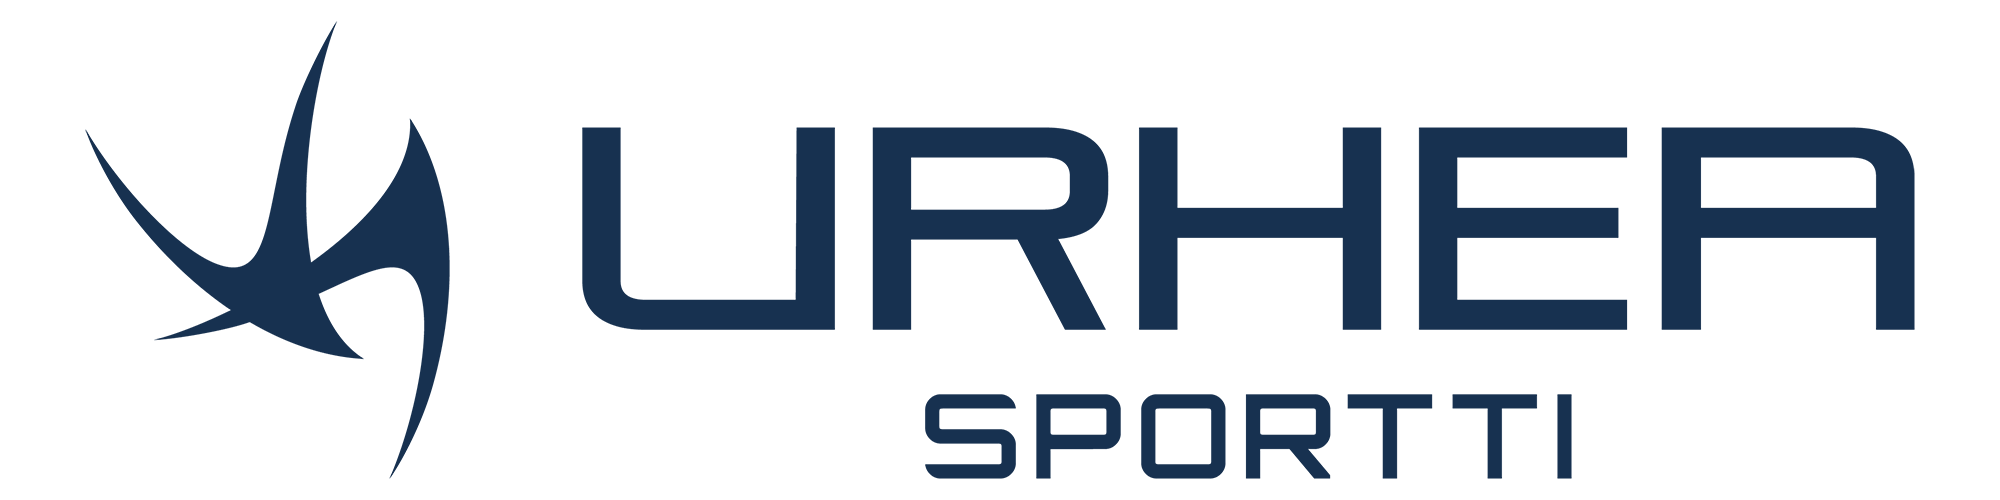 Urhea Logo